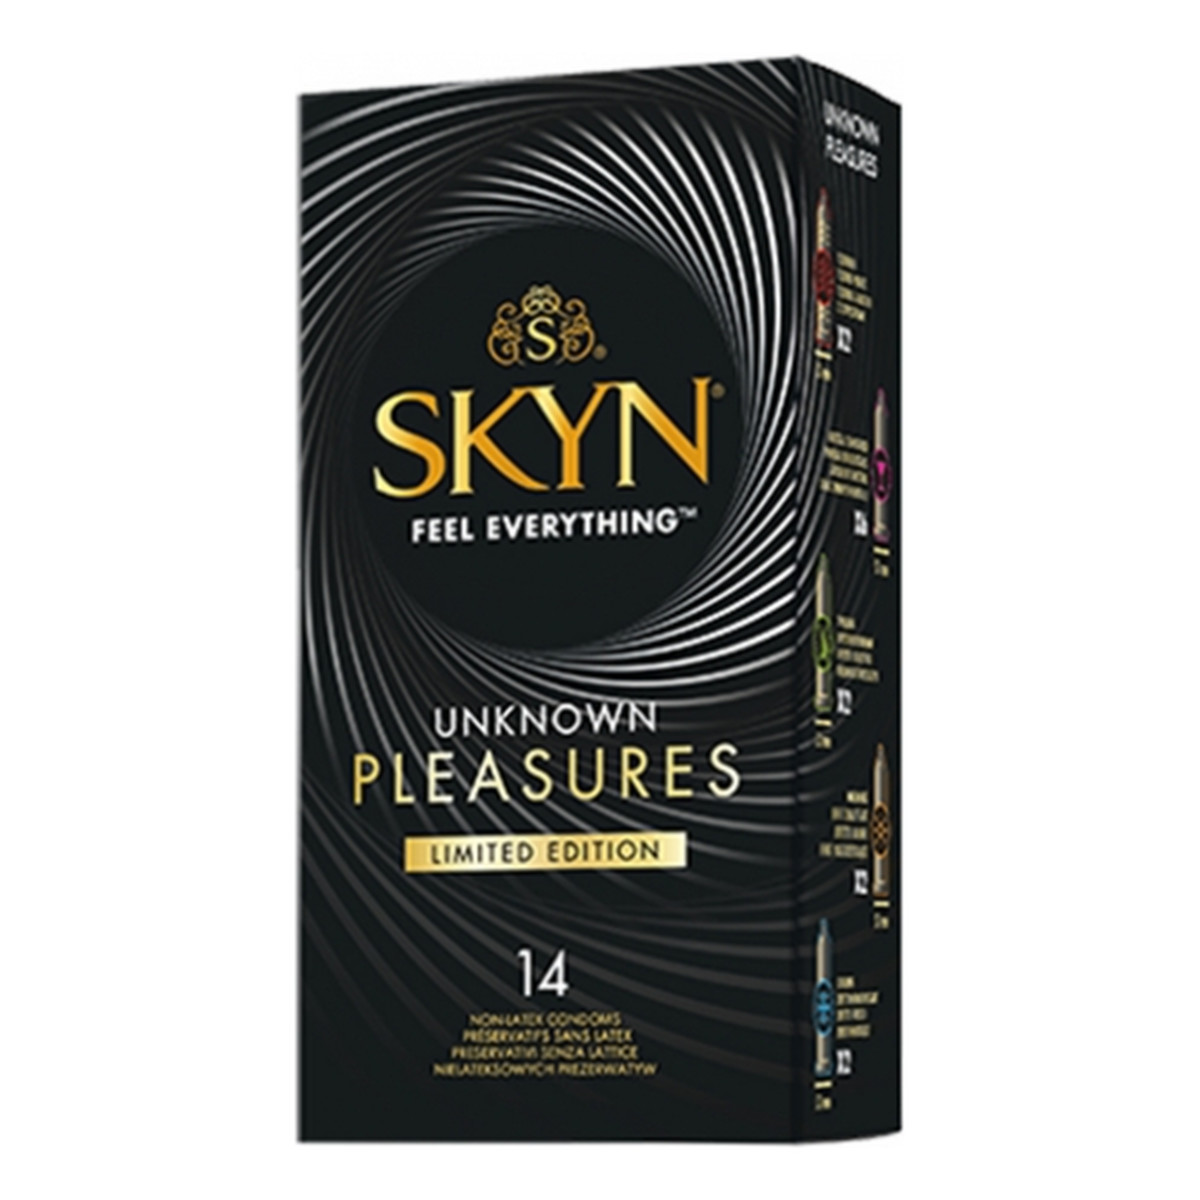 Unimil Skyn Feel Everything Unknown Pleasures Limited Edition nielateksowe prezerwatywy mix 14szt.